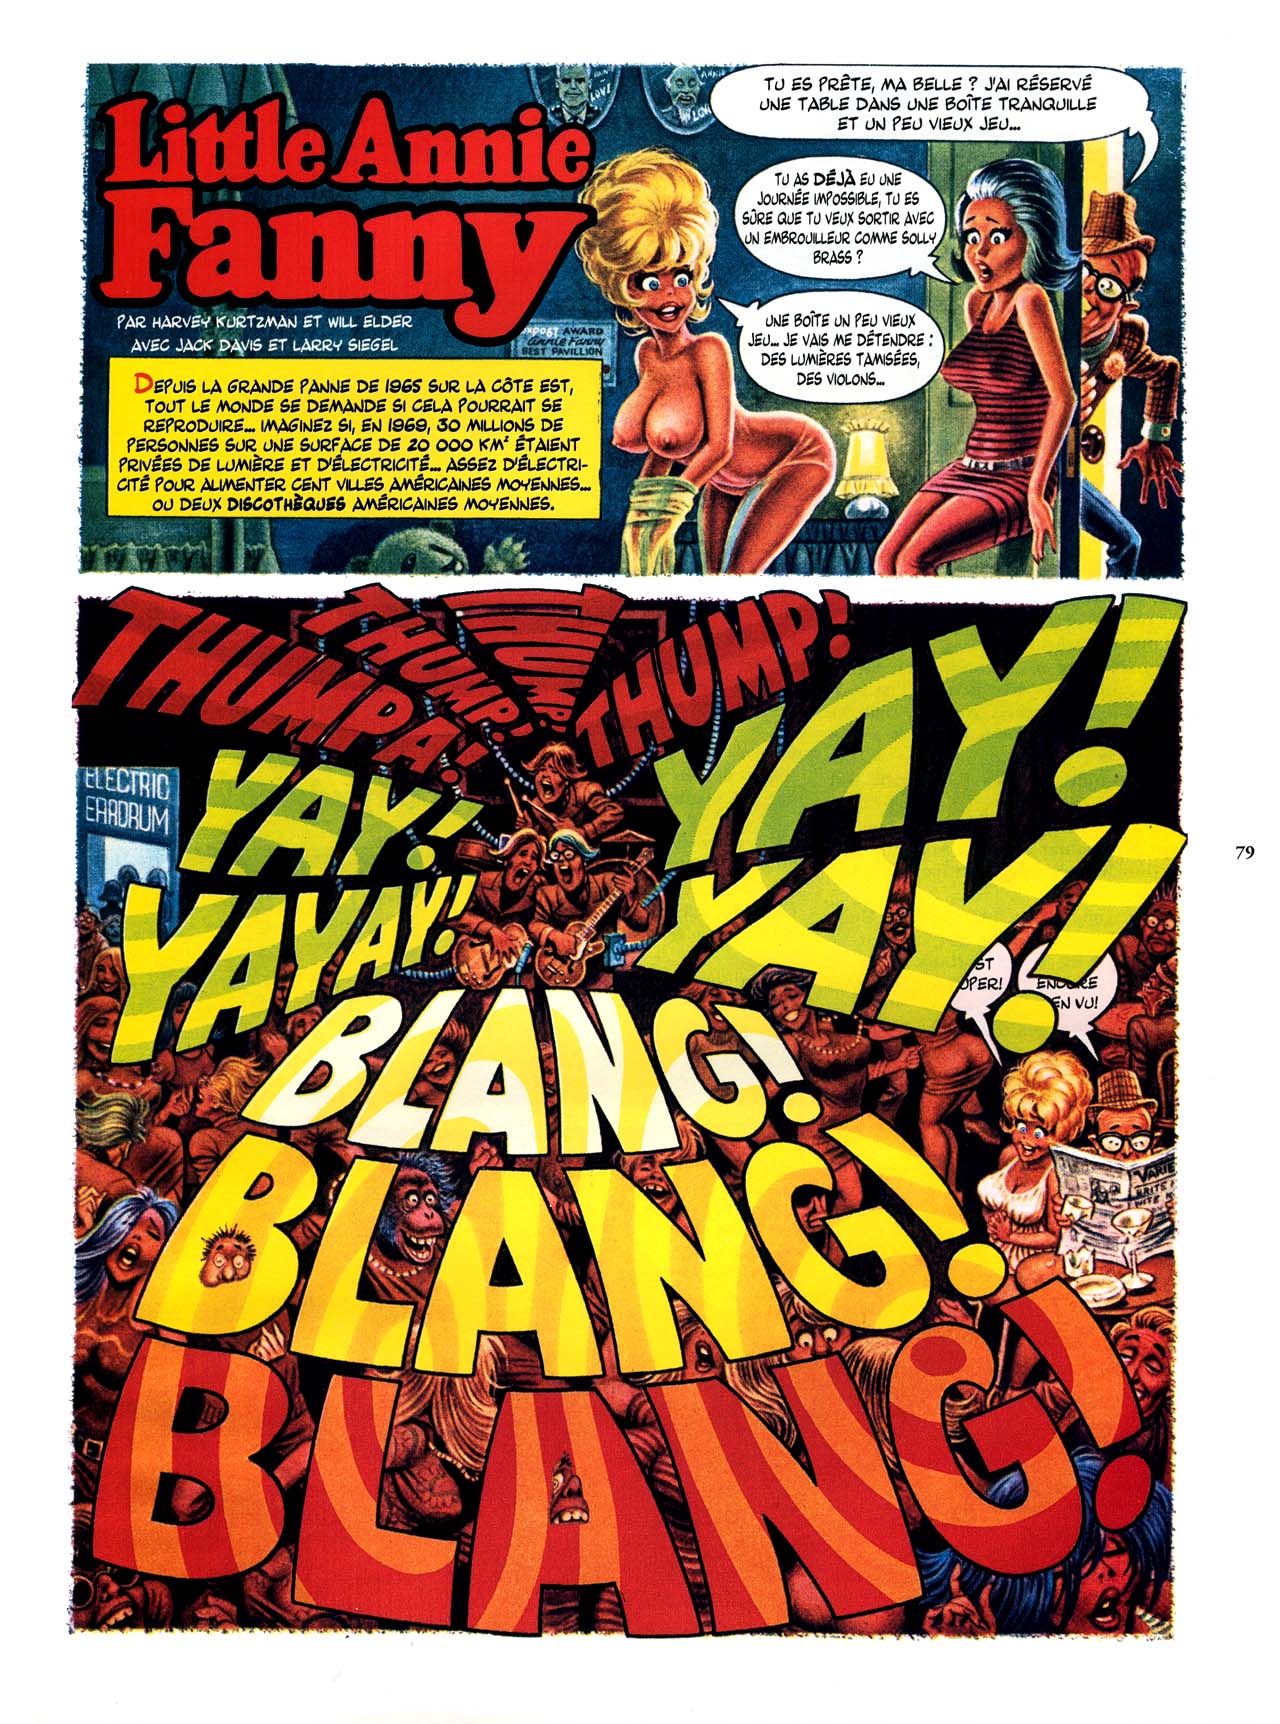 Playboys Little Annie Fanny Vol. 2 - 1965-1970 numero d'image 79